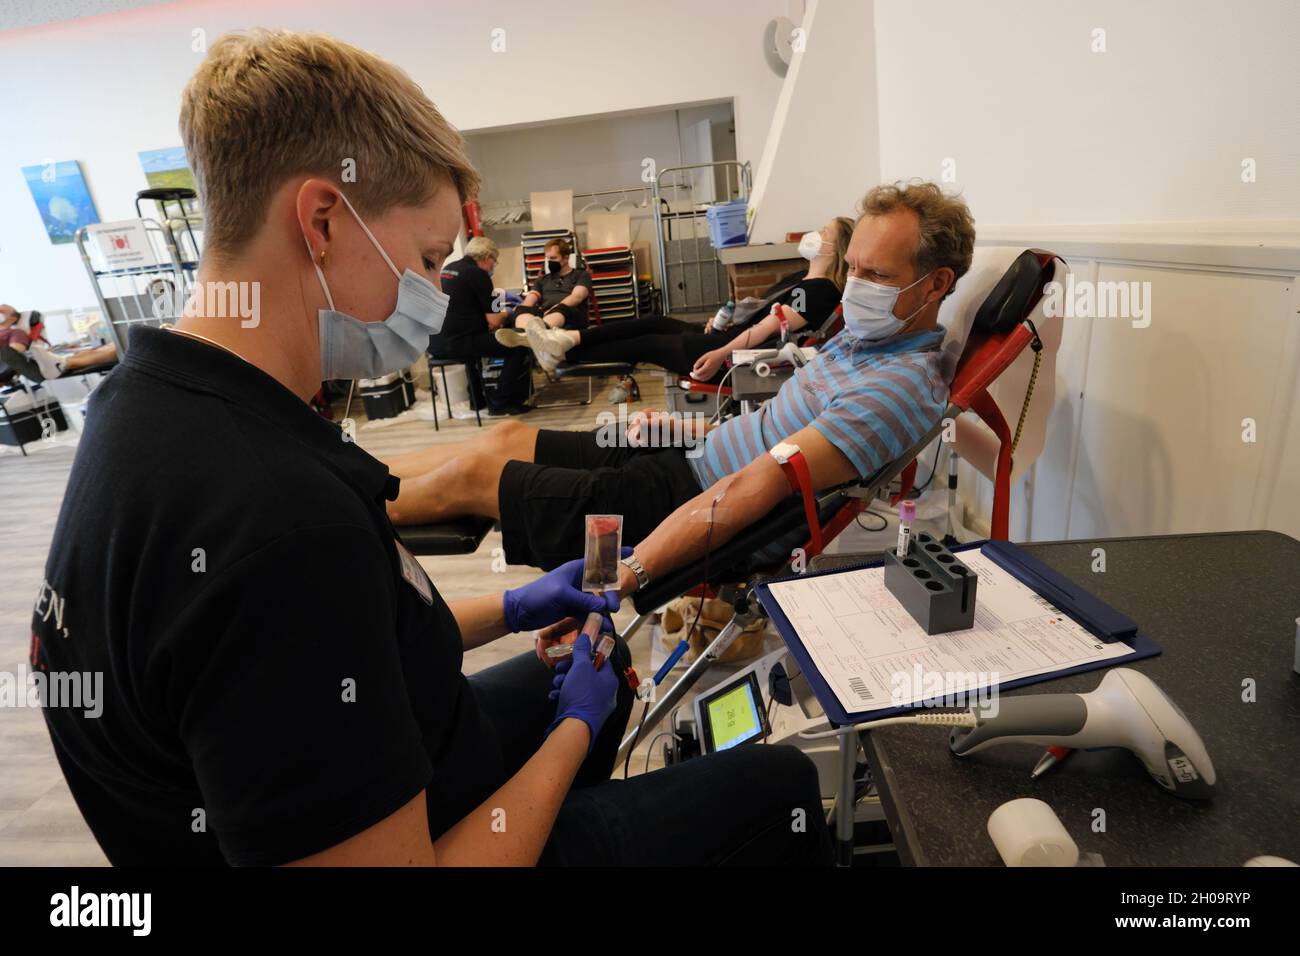 '14.06.2021, Germania, Brema, Brema - donazione di sangue per il DRK, dipendente depone la canula. 00A210614D131CAROEX.JPG [RELEASE MODELLO: NO, PROPERTY RELE Foto Stock